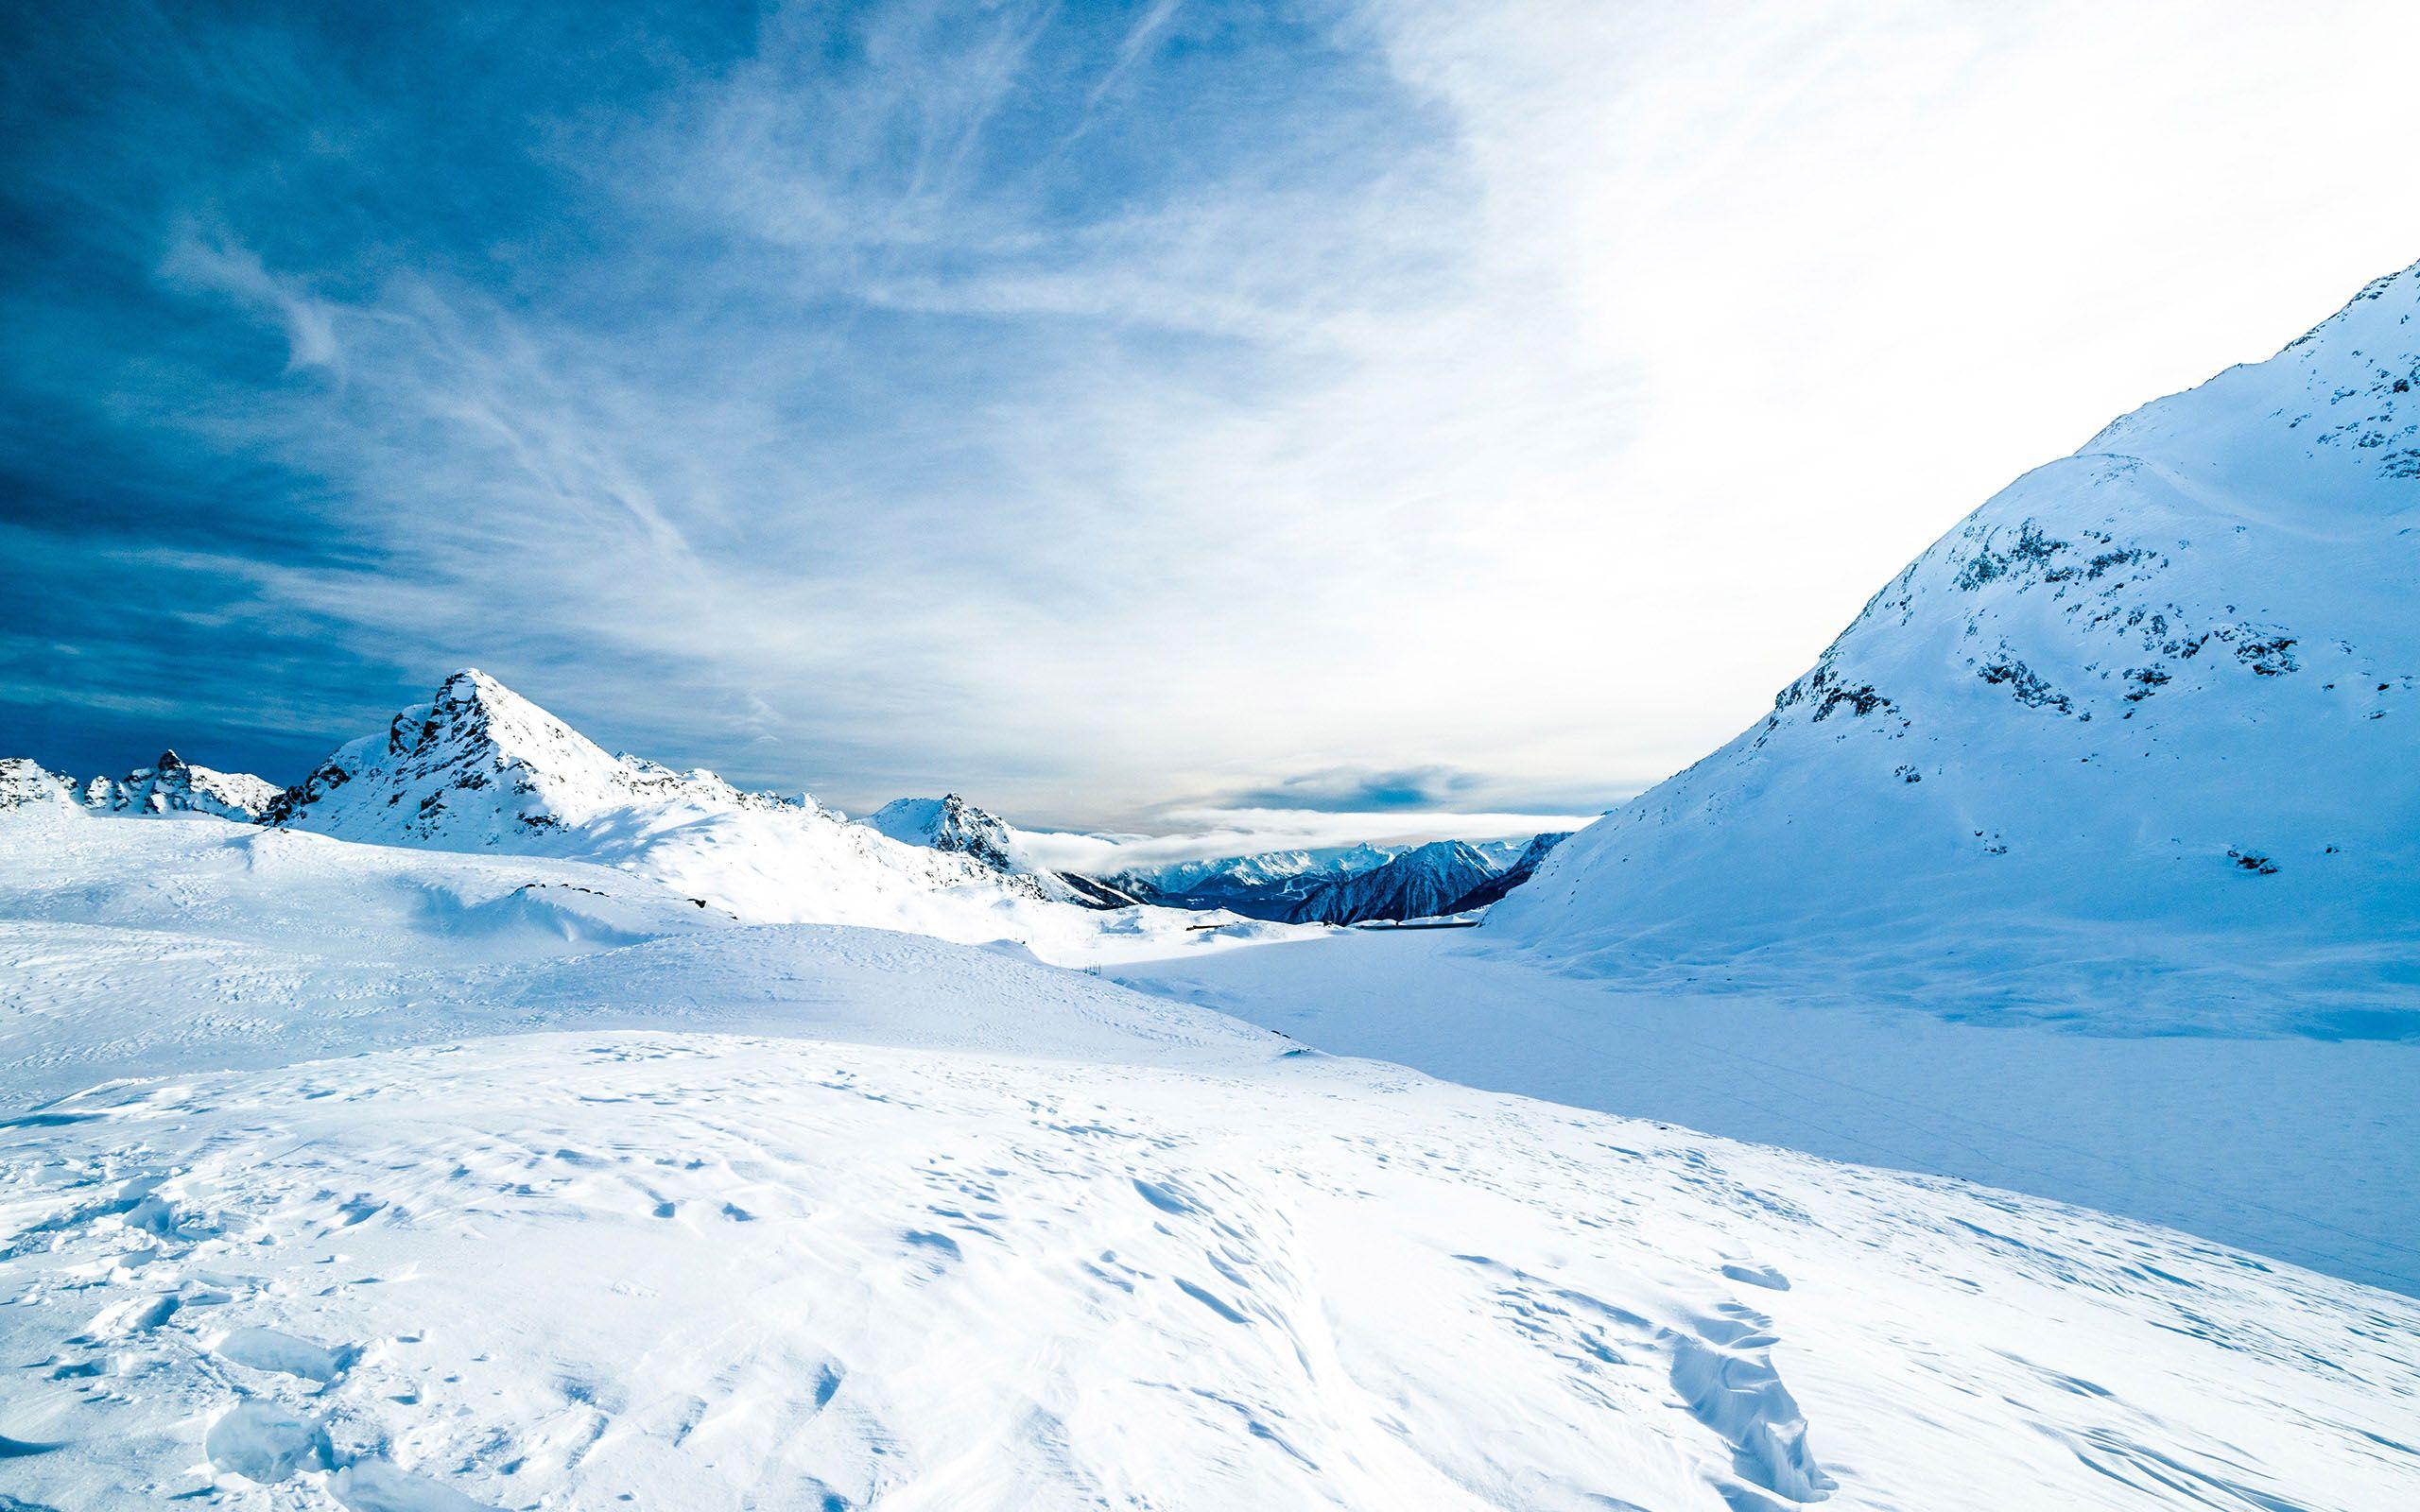 Snow, mountain, cold Wallpaper